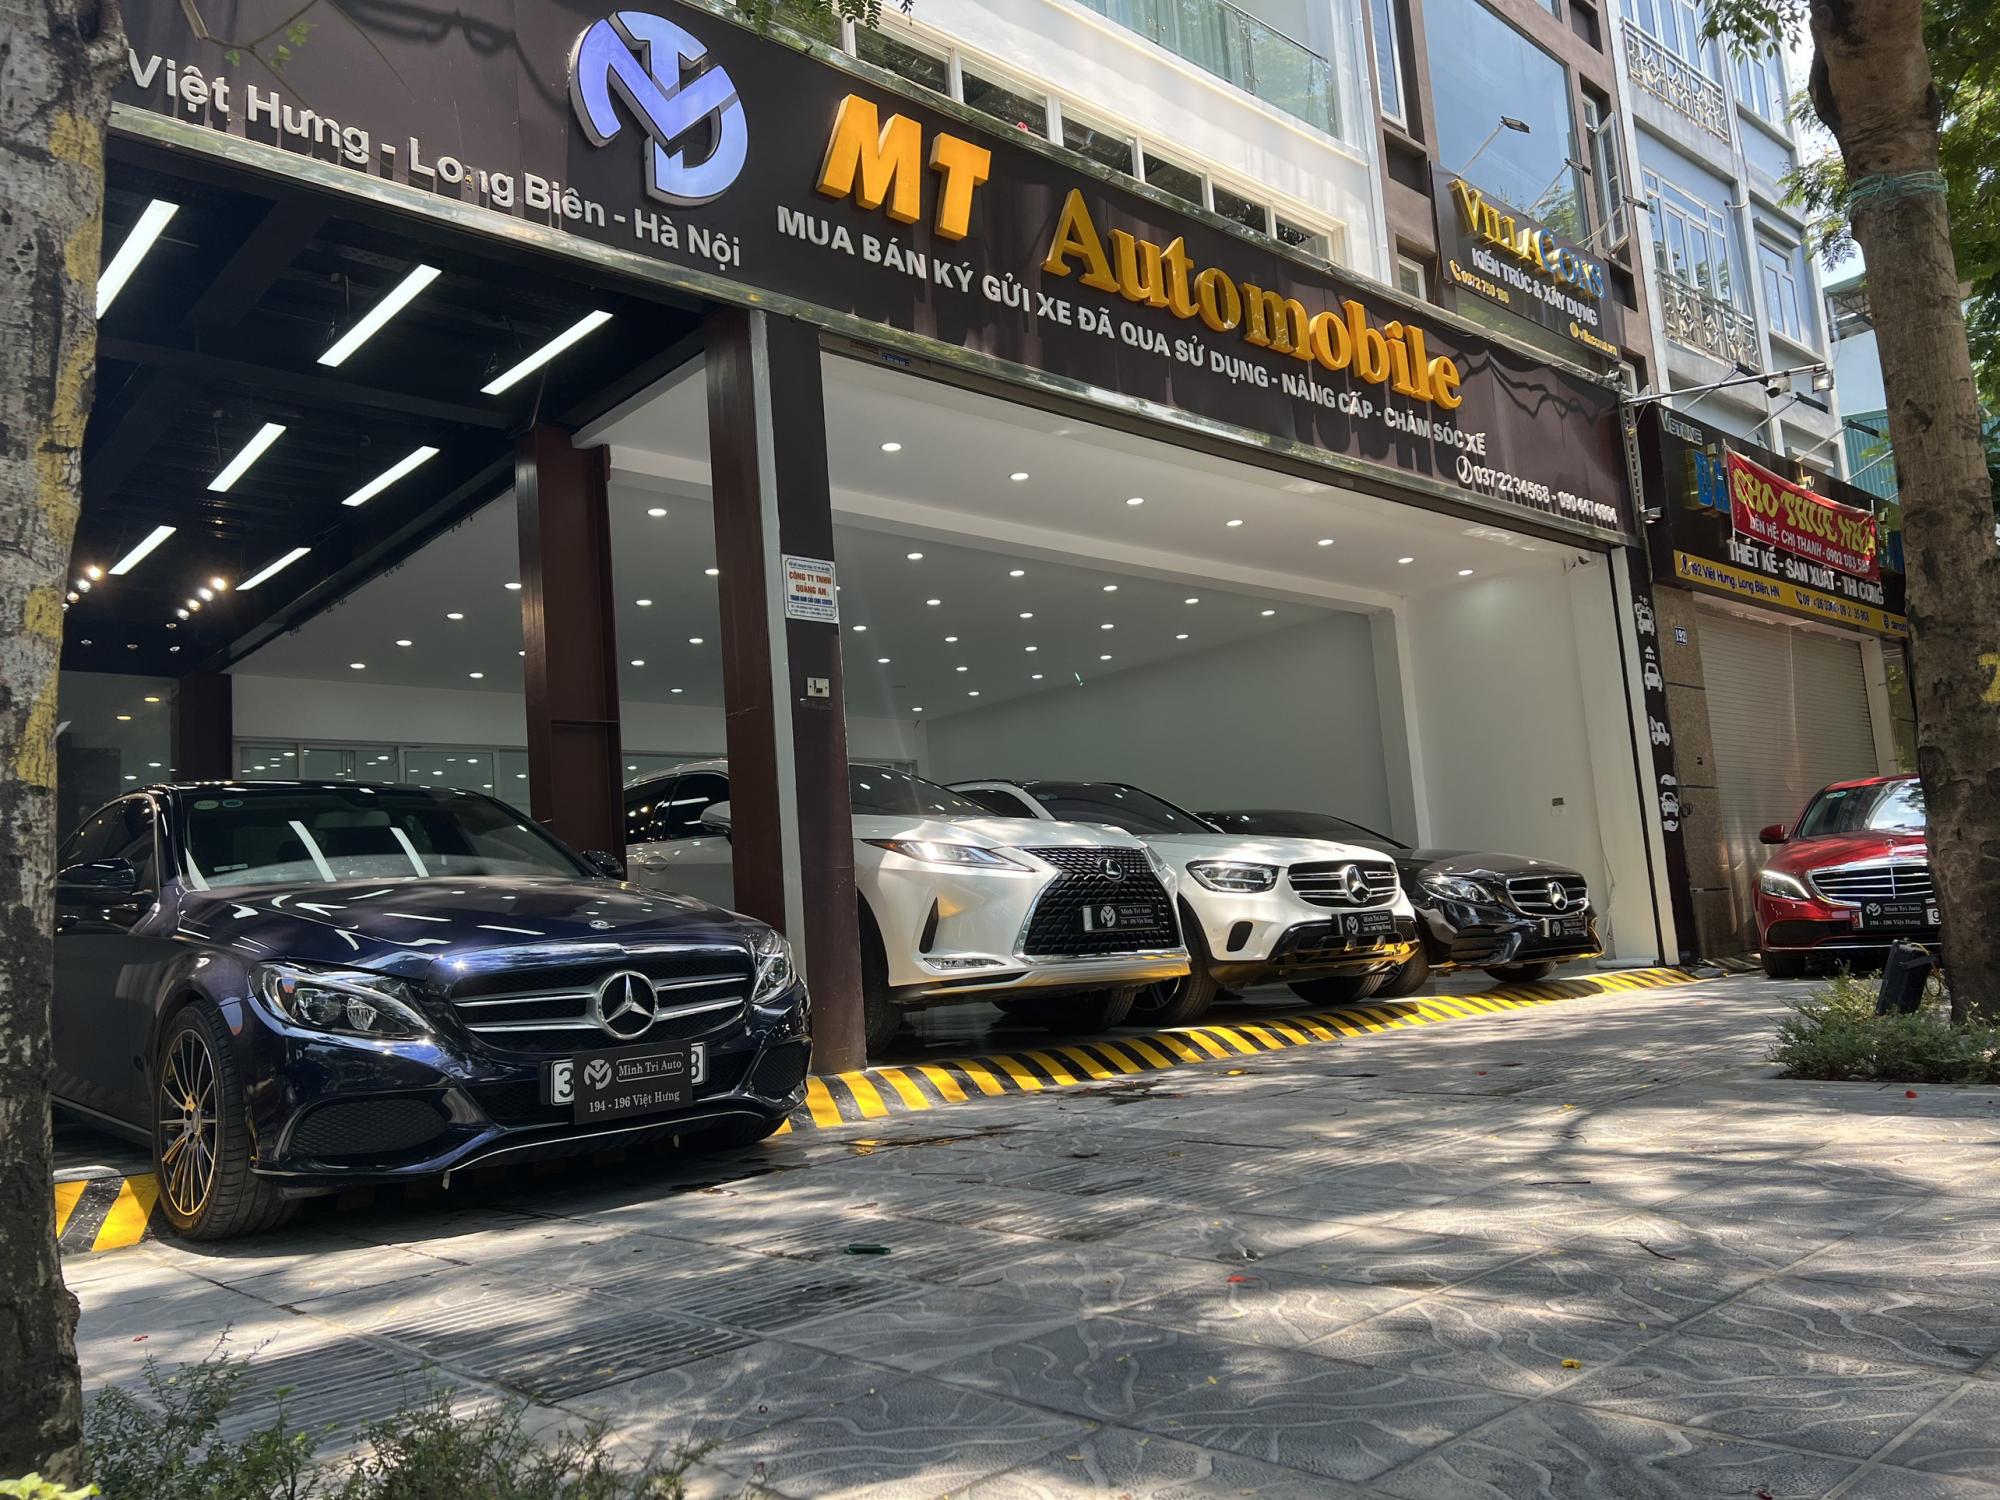 Minh Trí Auto (MT Automobile)